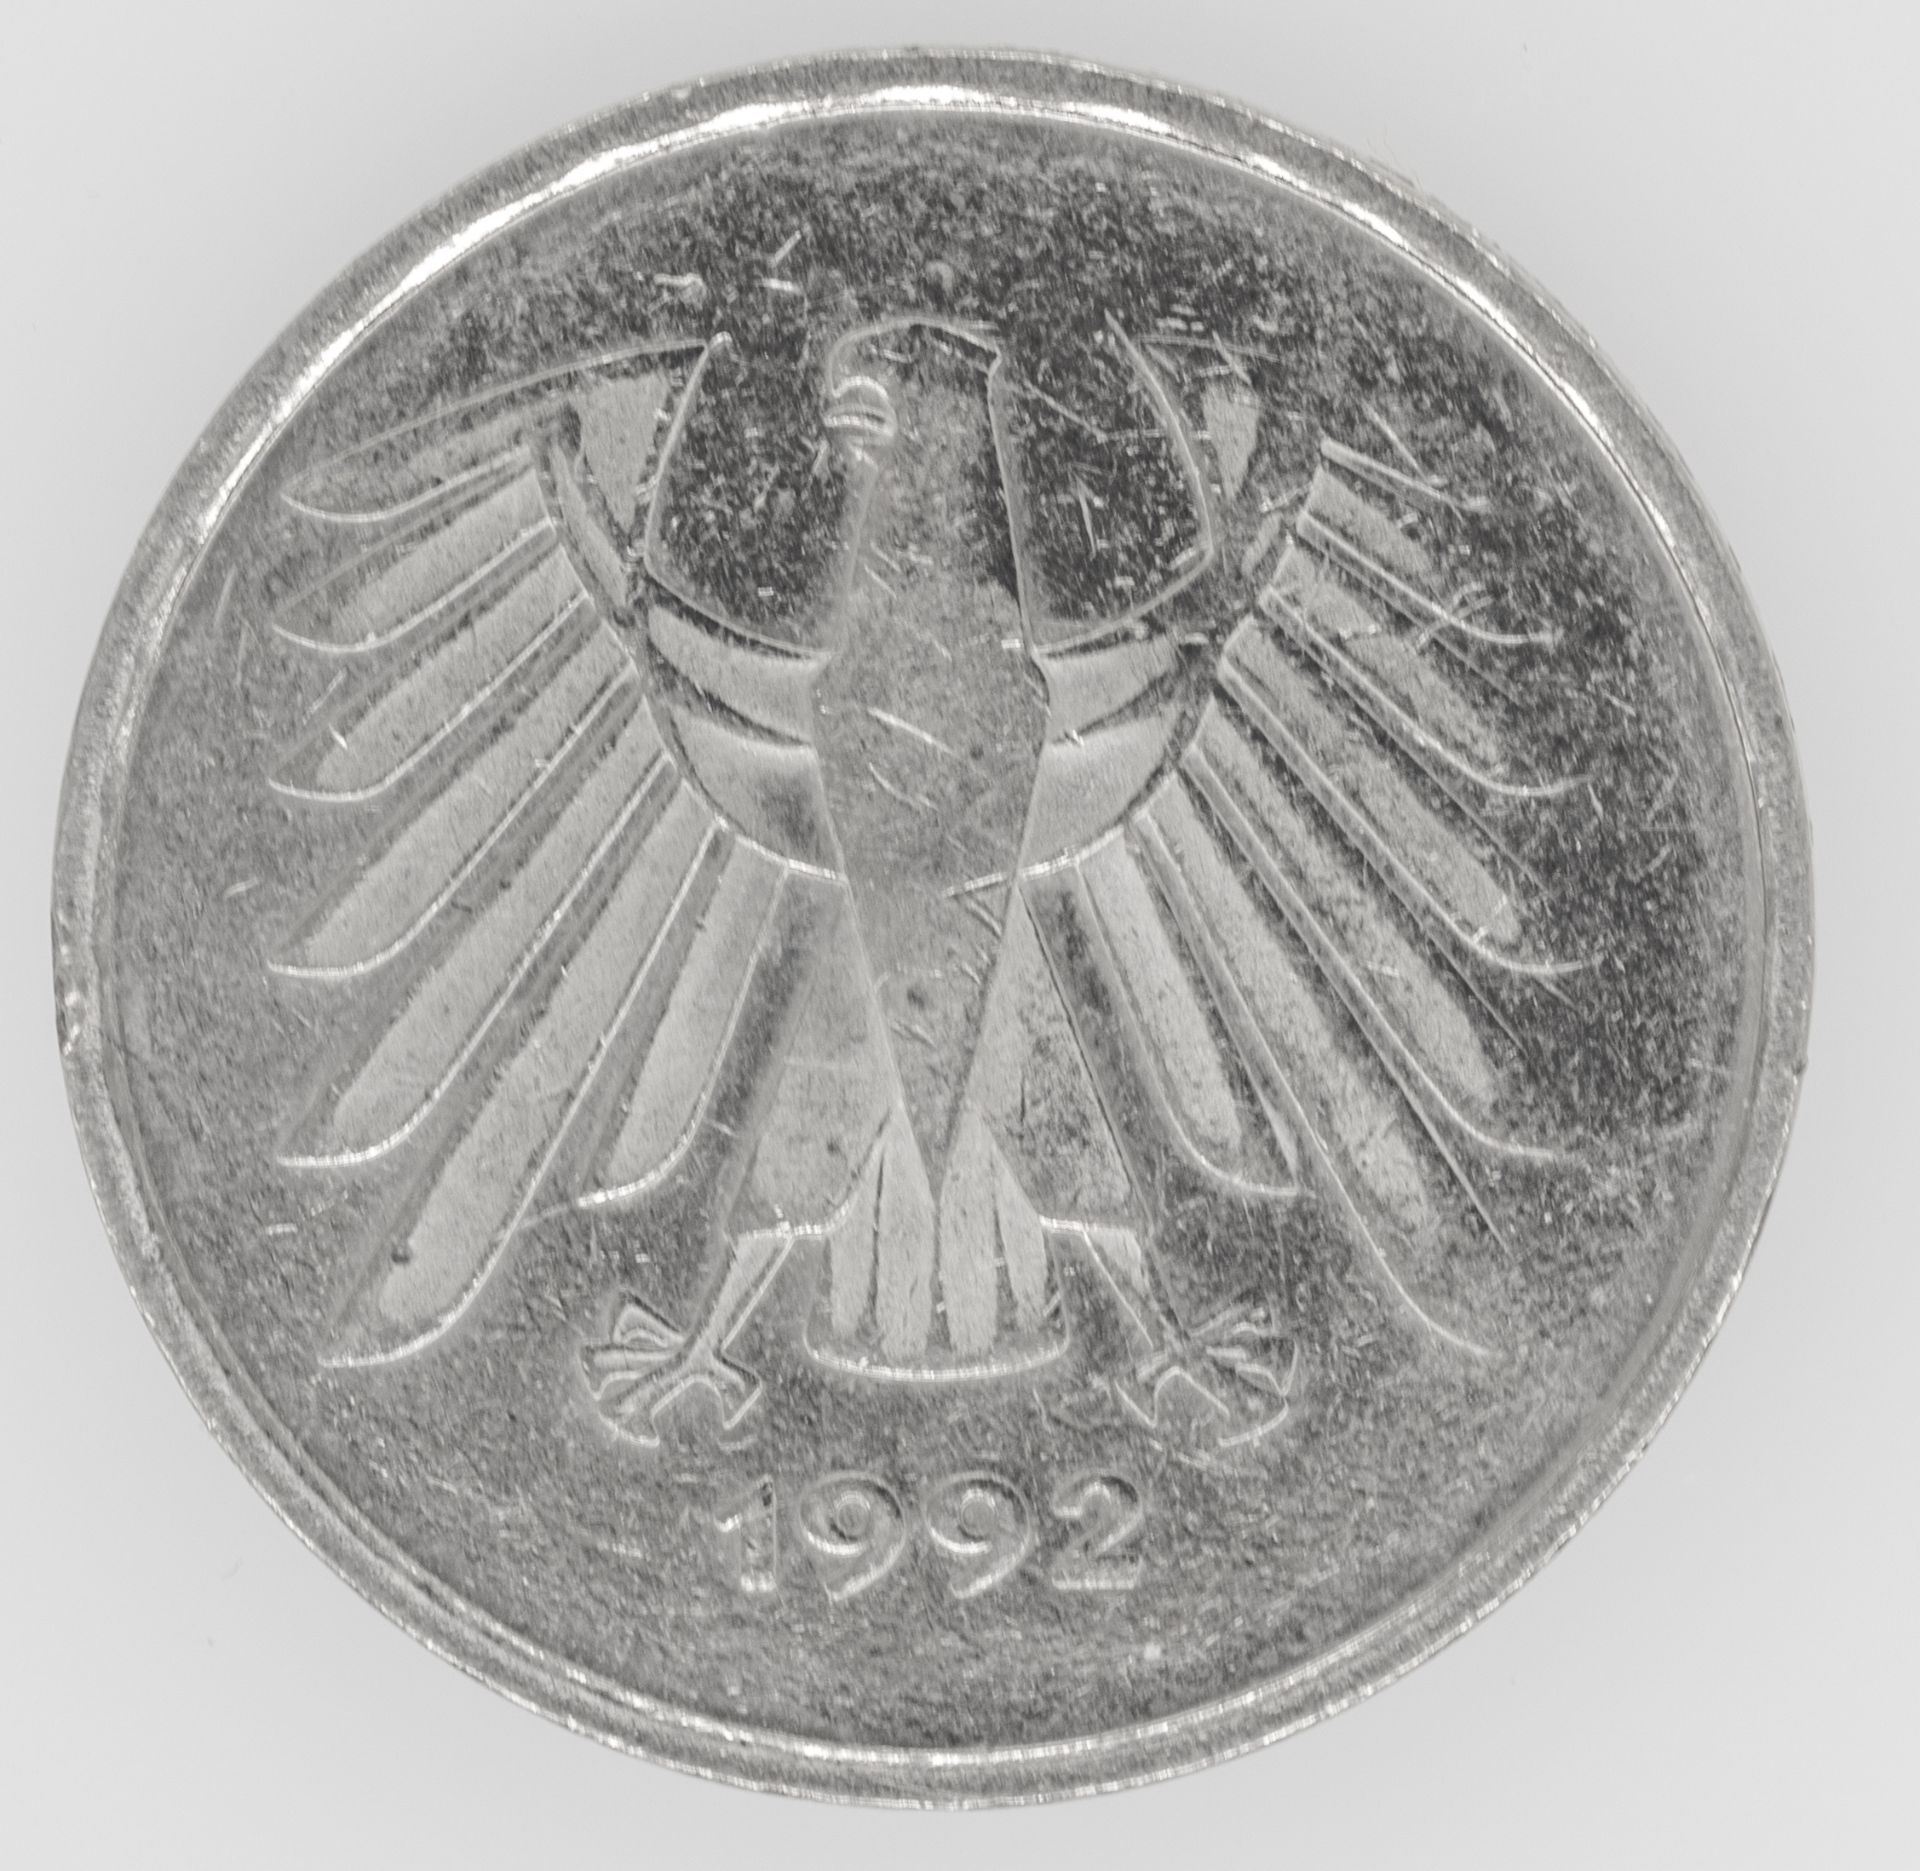 BRD 1992, 5.- DM - Münze, Fehlprägung: Nominalseite sehr schwache Prägung. - Bild 2 aus 2